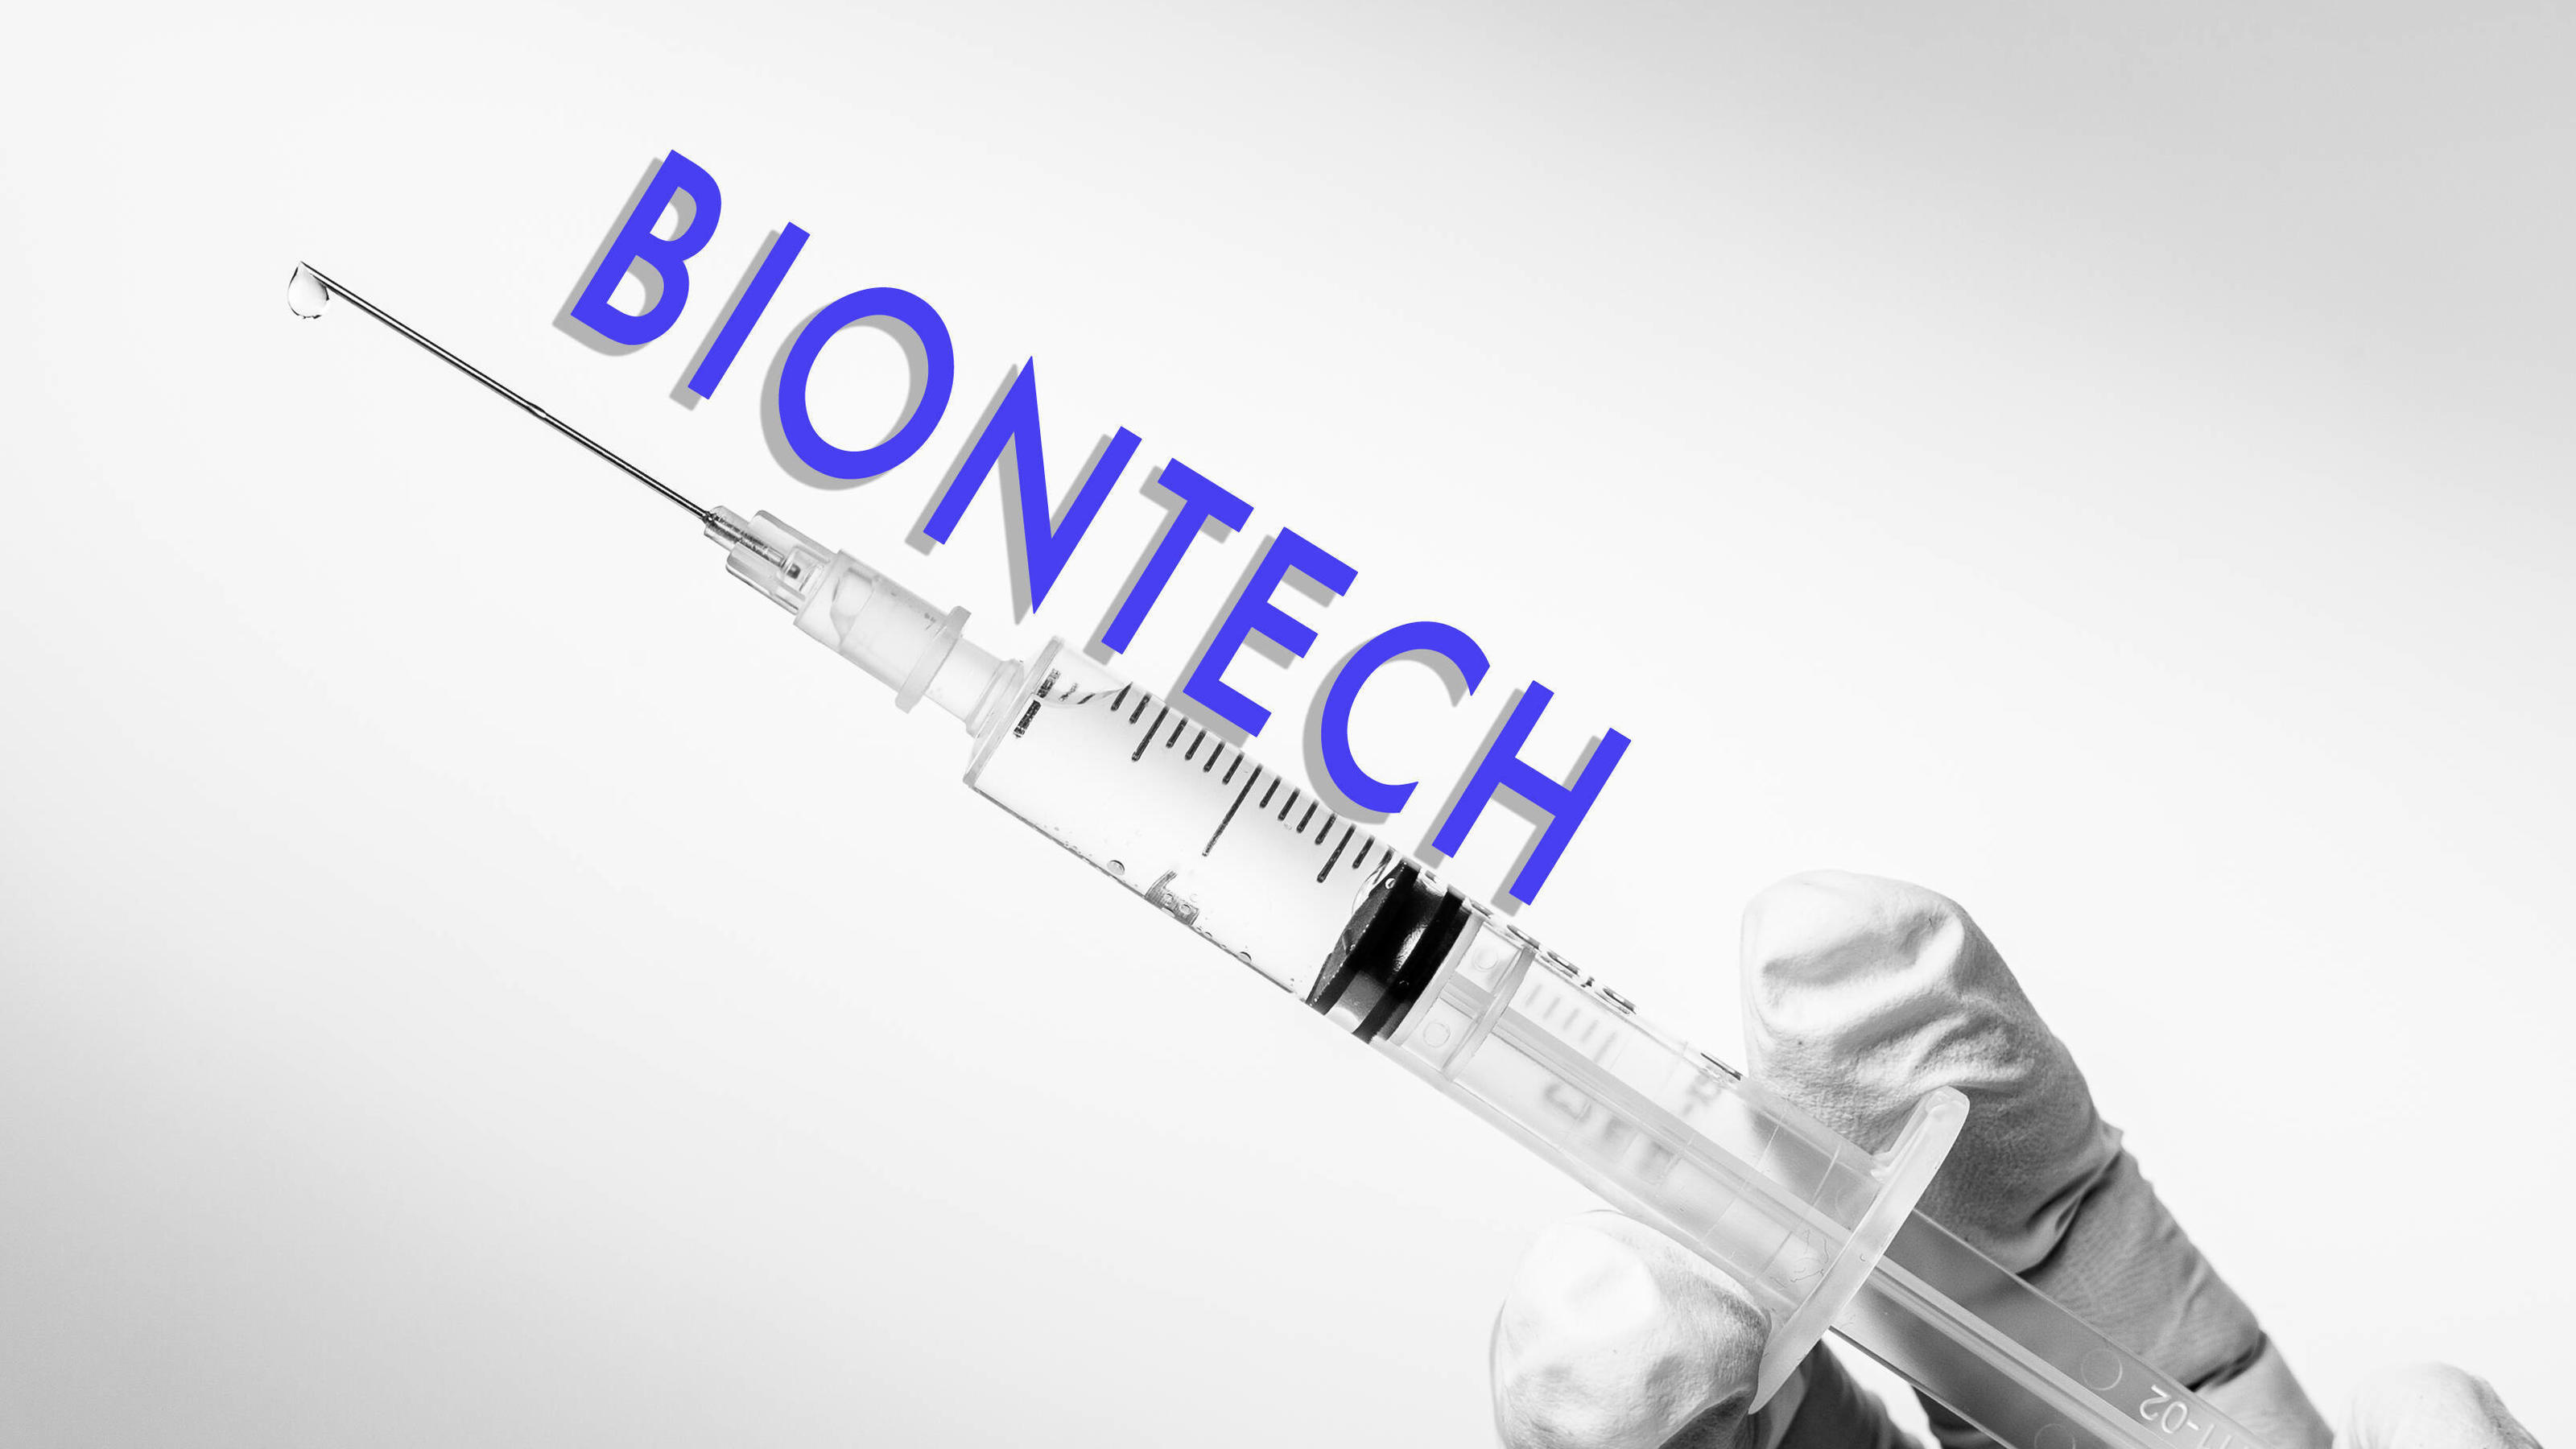 Corona-Impfstoff von BioNTech & Pfizer zu 90% wirksam ...